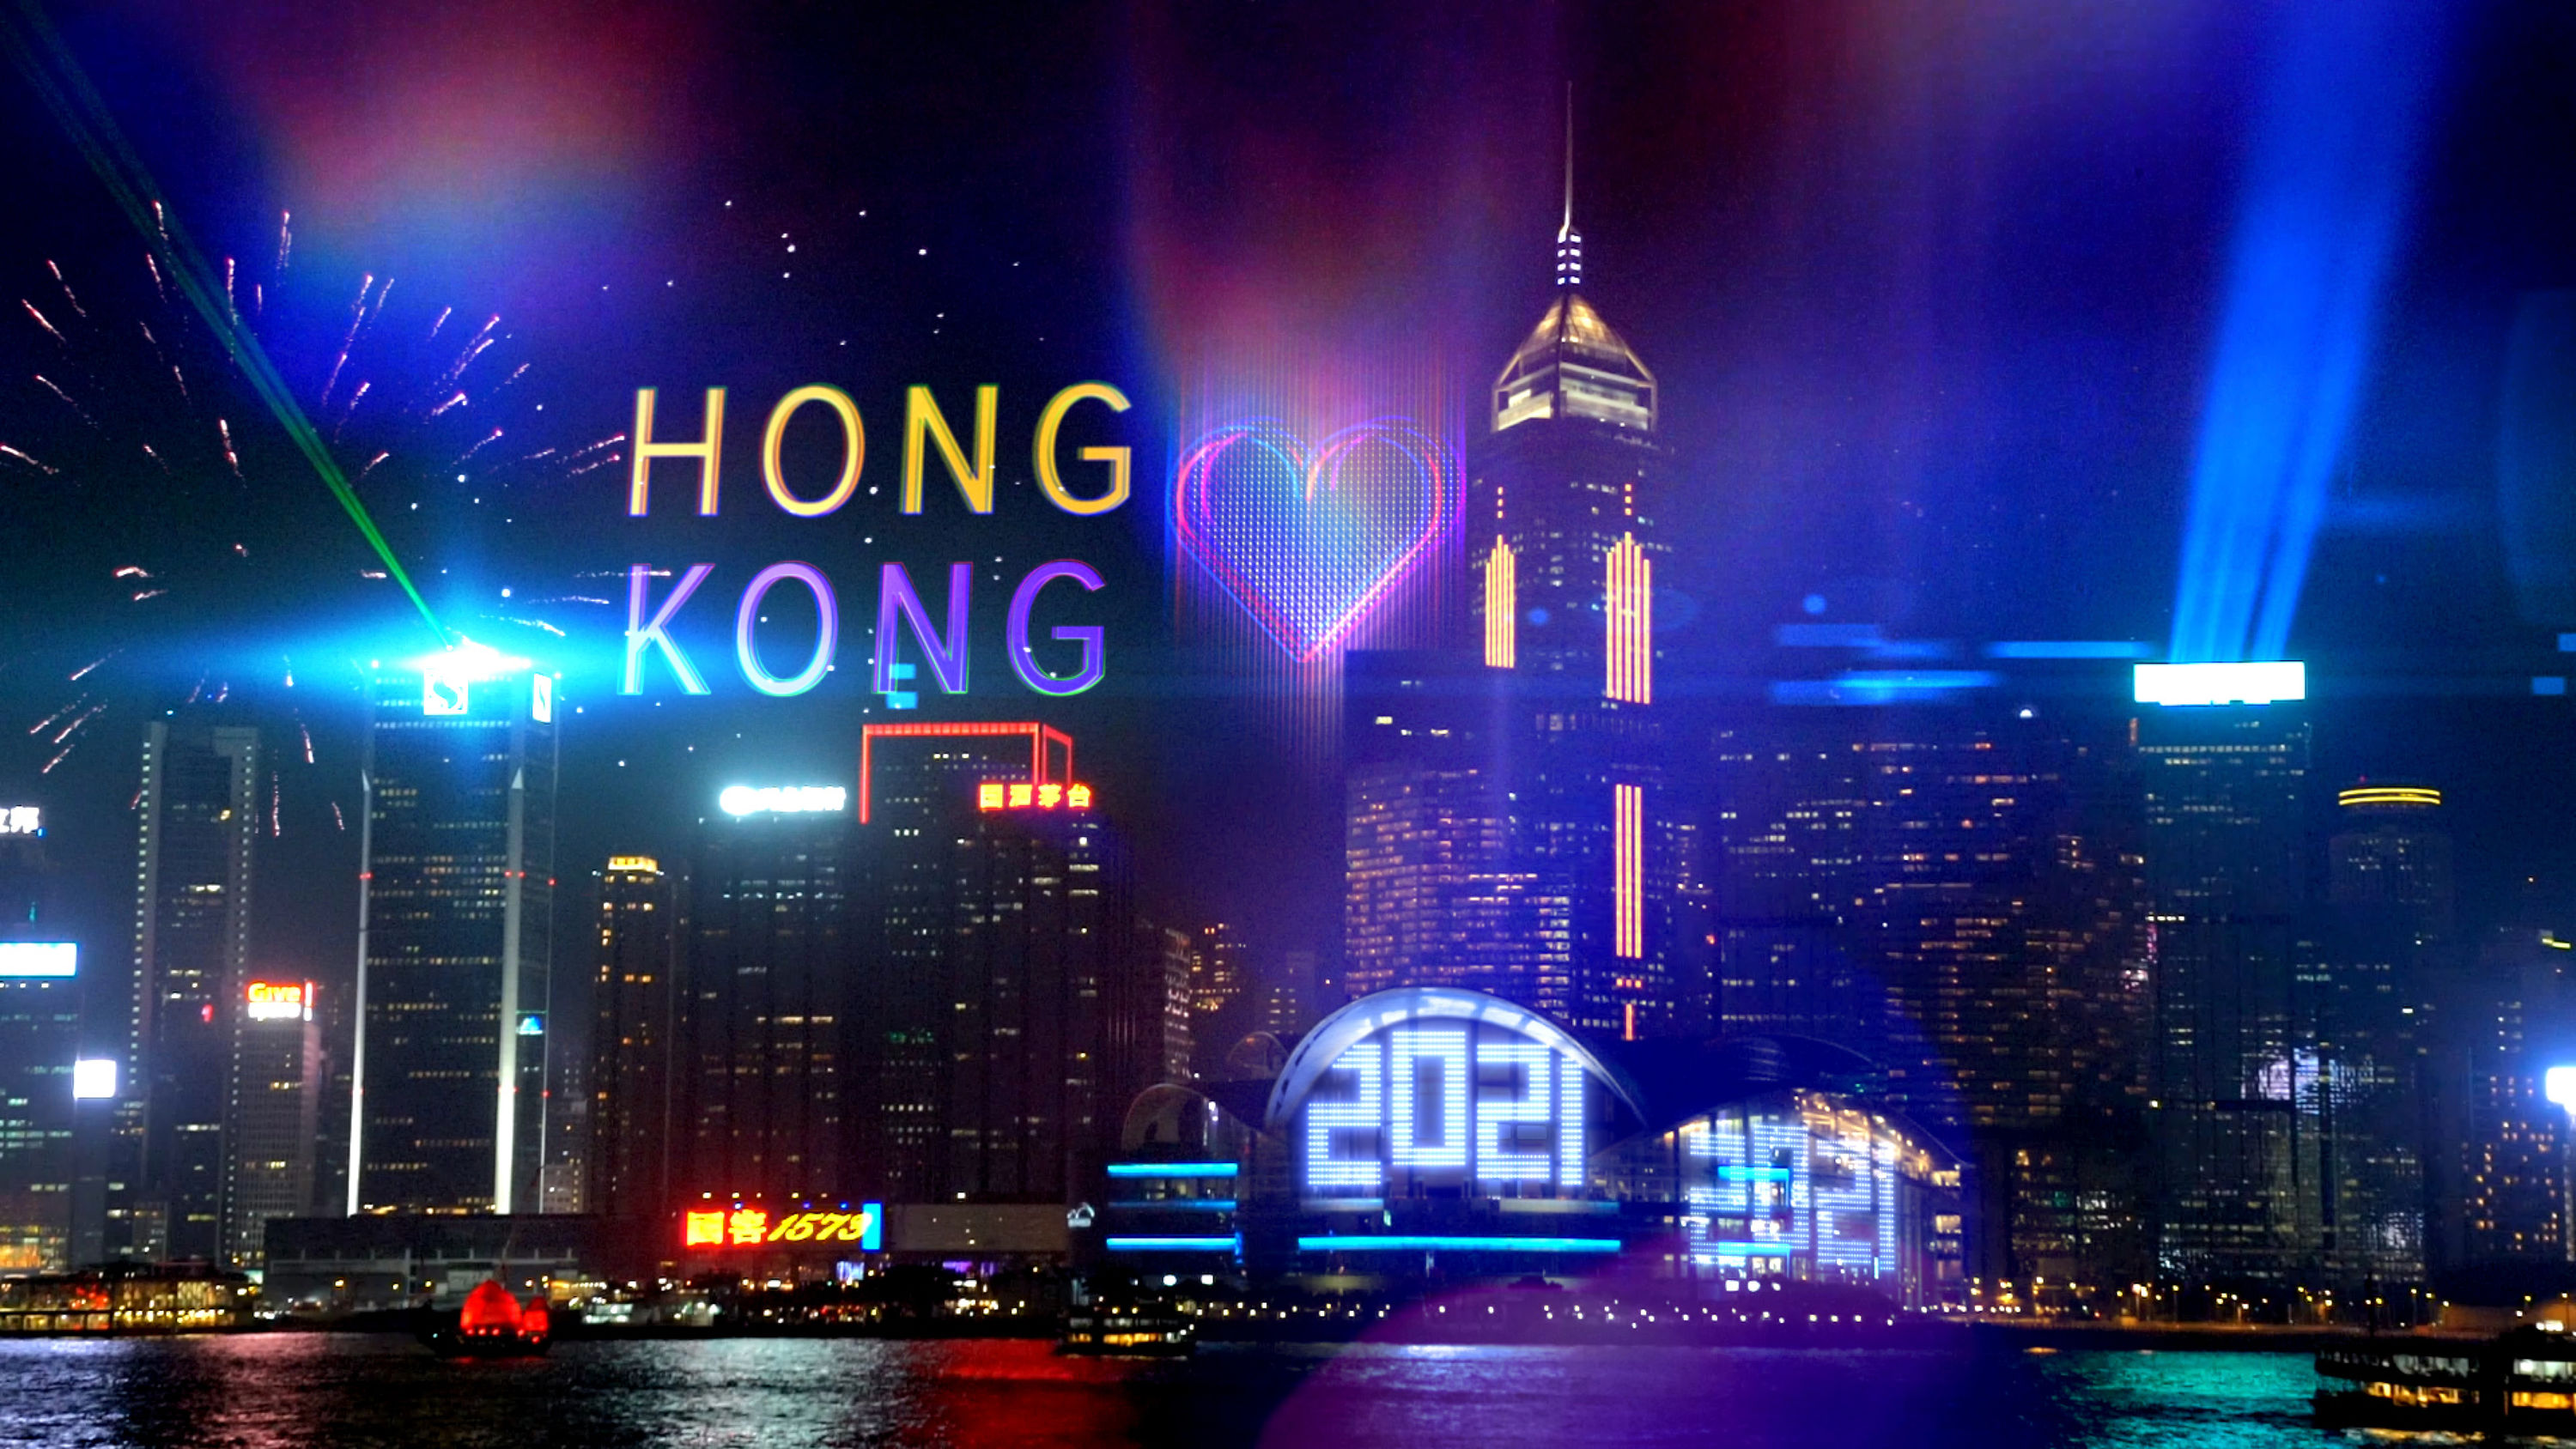 香港ニューイヤーカウントダウン セレブレーション 21年へのカウントダウンイベントを初のオンライン開催 香港政府観光局のプレスリリース